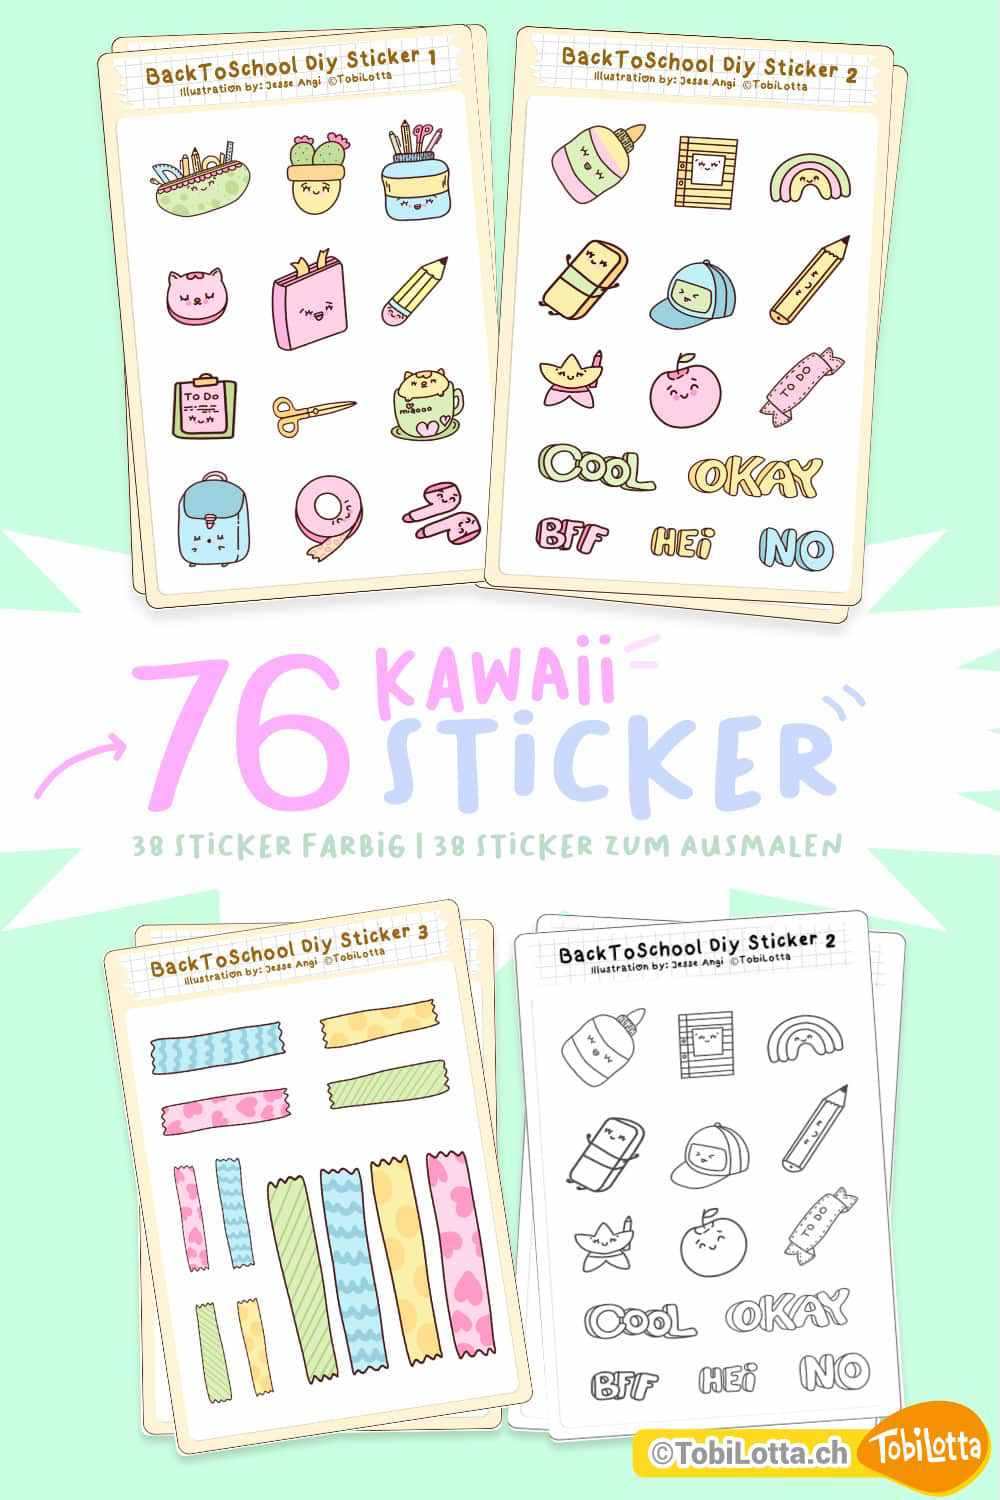 39766 Kawaii Sticker kaufen Shop zum Ausdrucken